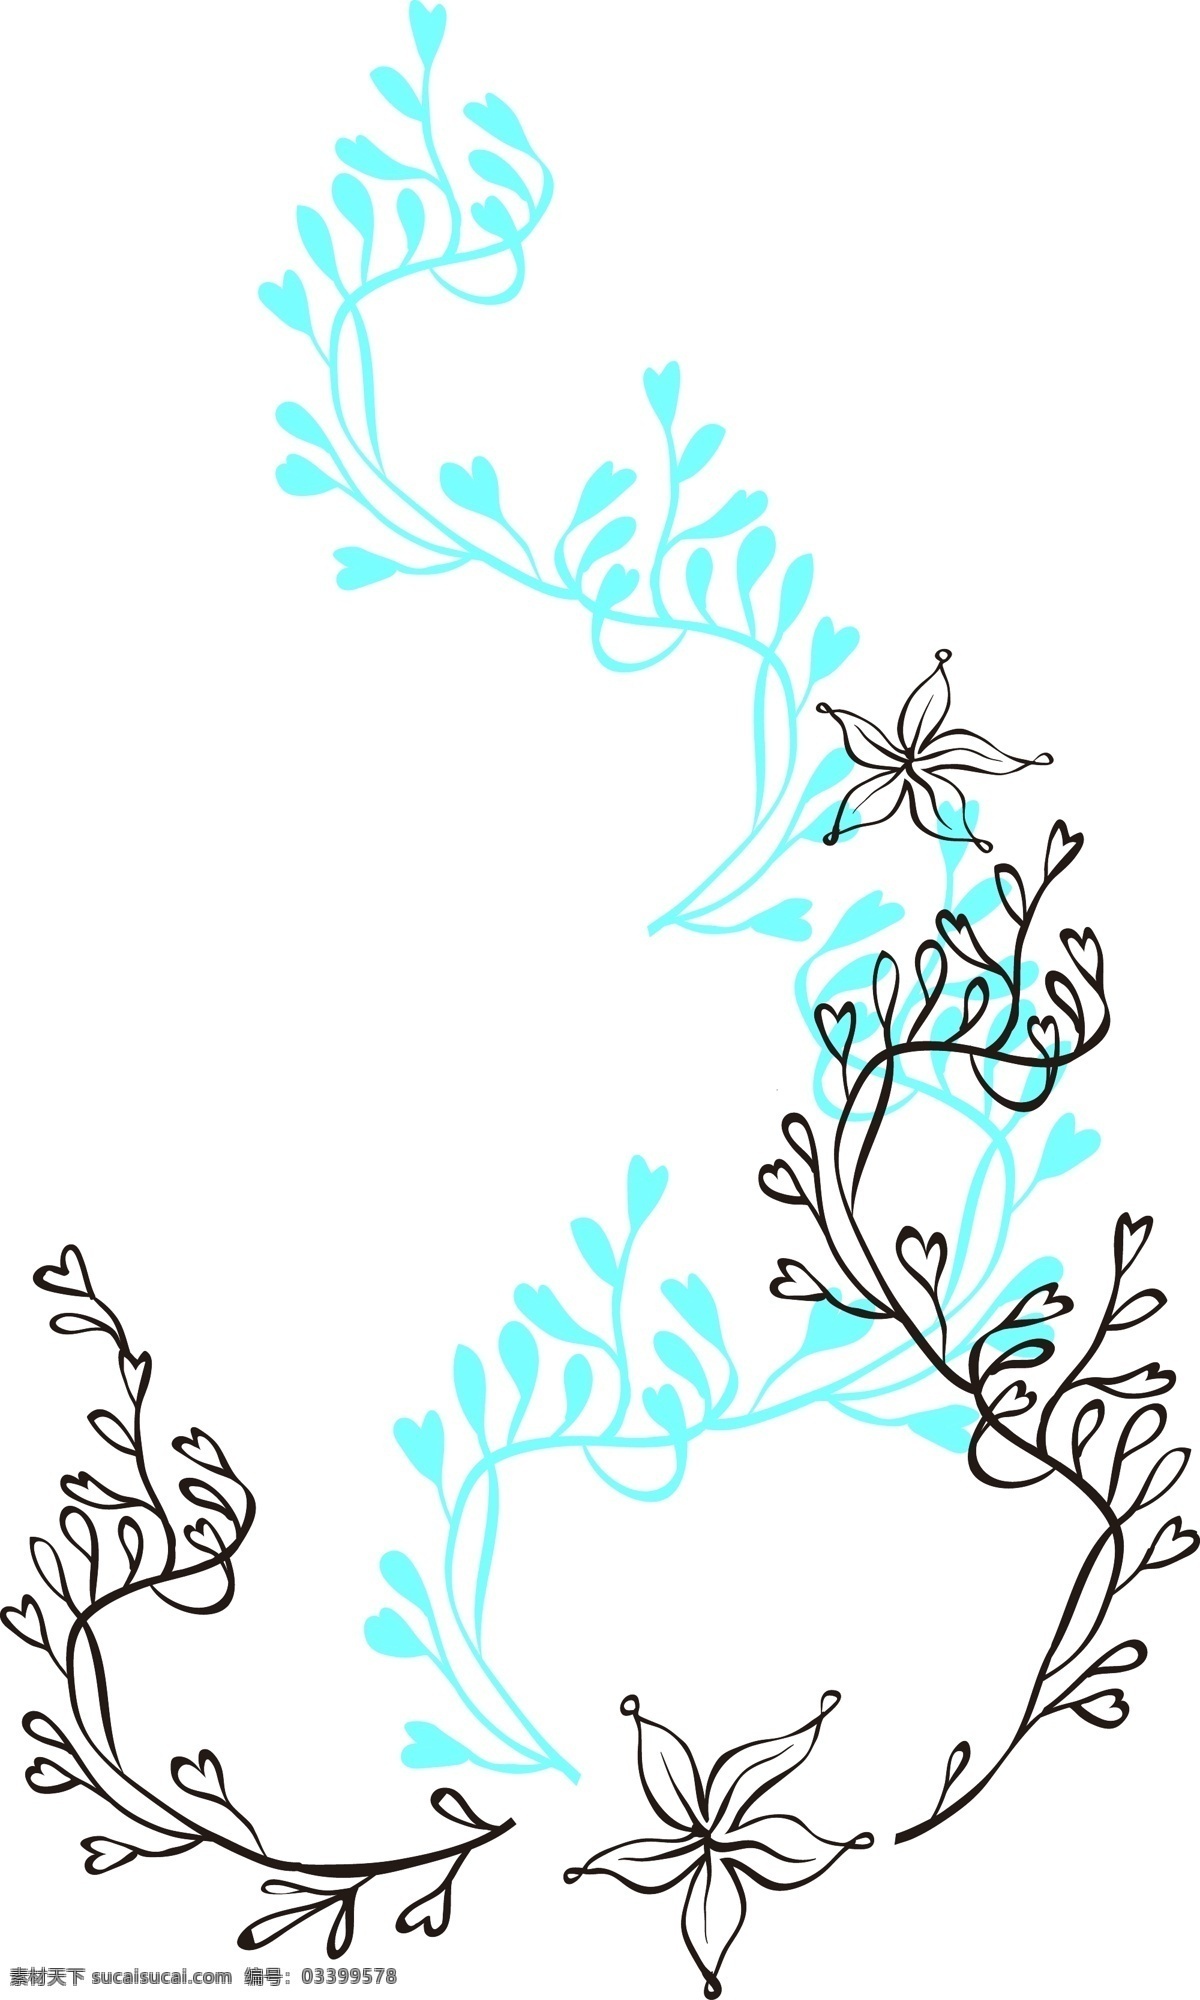 矢量 手绘 海草 植物 花纹 绿色 水底 海底植物 花朵 绿色植物 漂浮 卡通手绘 装饰